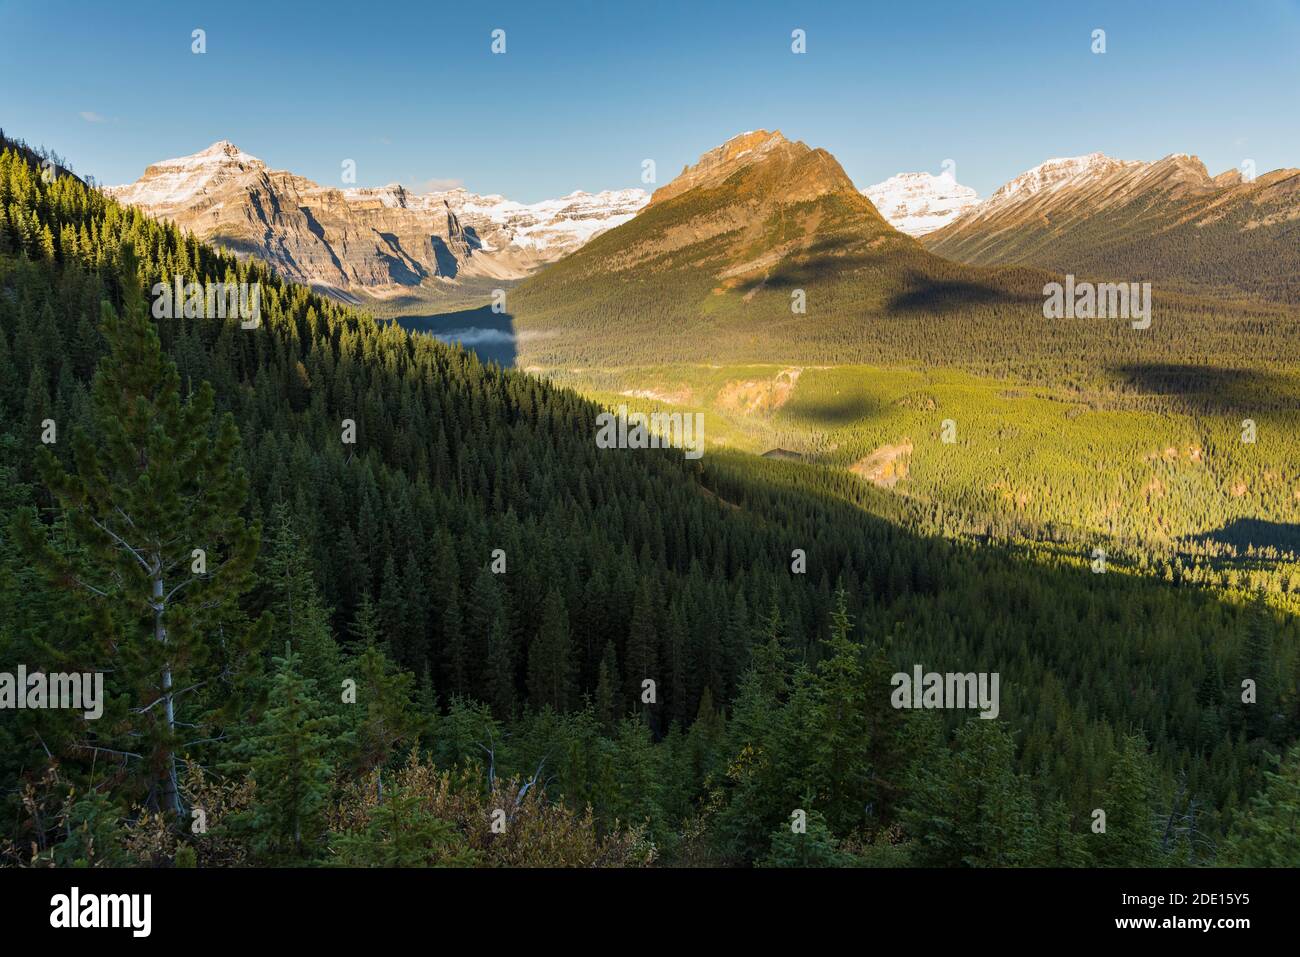 Vista del Monte Bell y el Lago Vista desde el camino del Lago Arnica, Parque Nacional Banff, UNESCO, Alberta, Montañas Rocosas Canadienses, Canadá, América del Norte Foto de stock